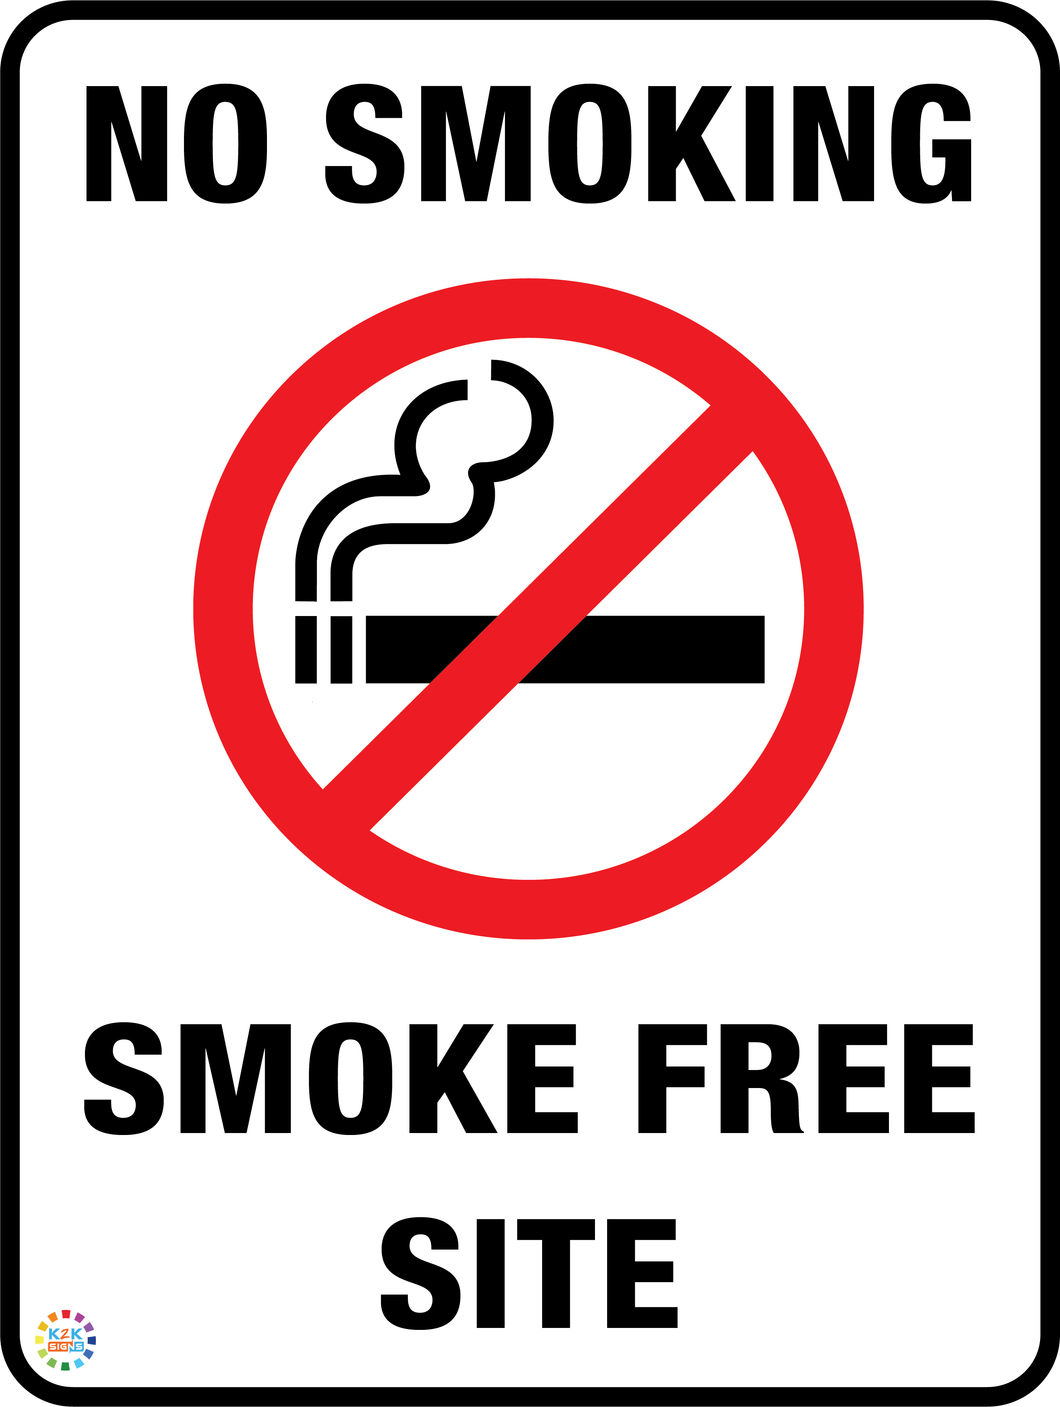 No Smoking - Smoke Free Site Sign